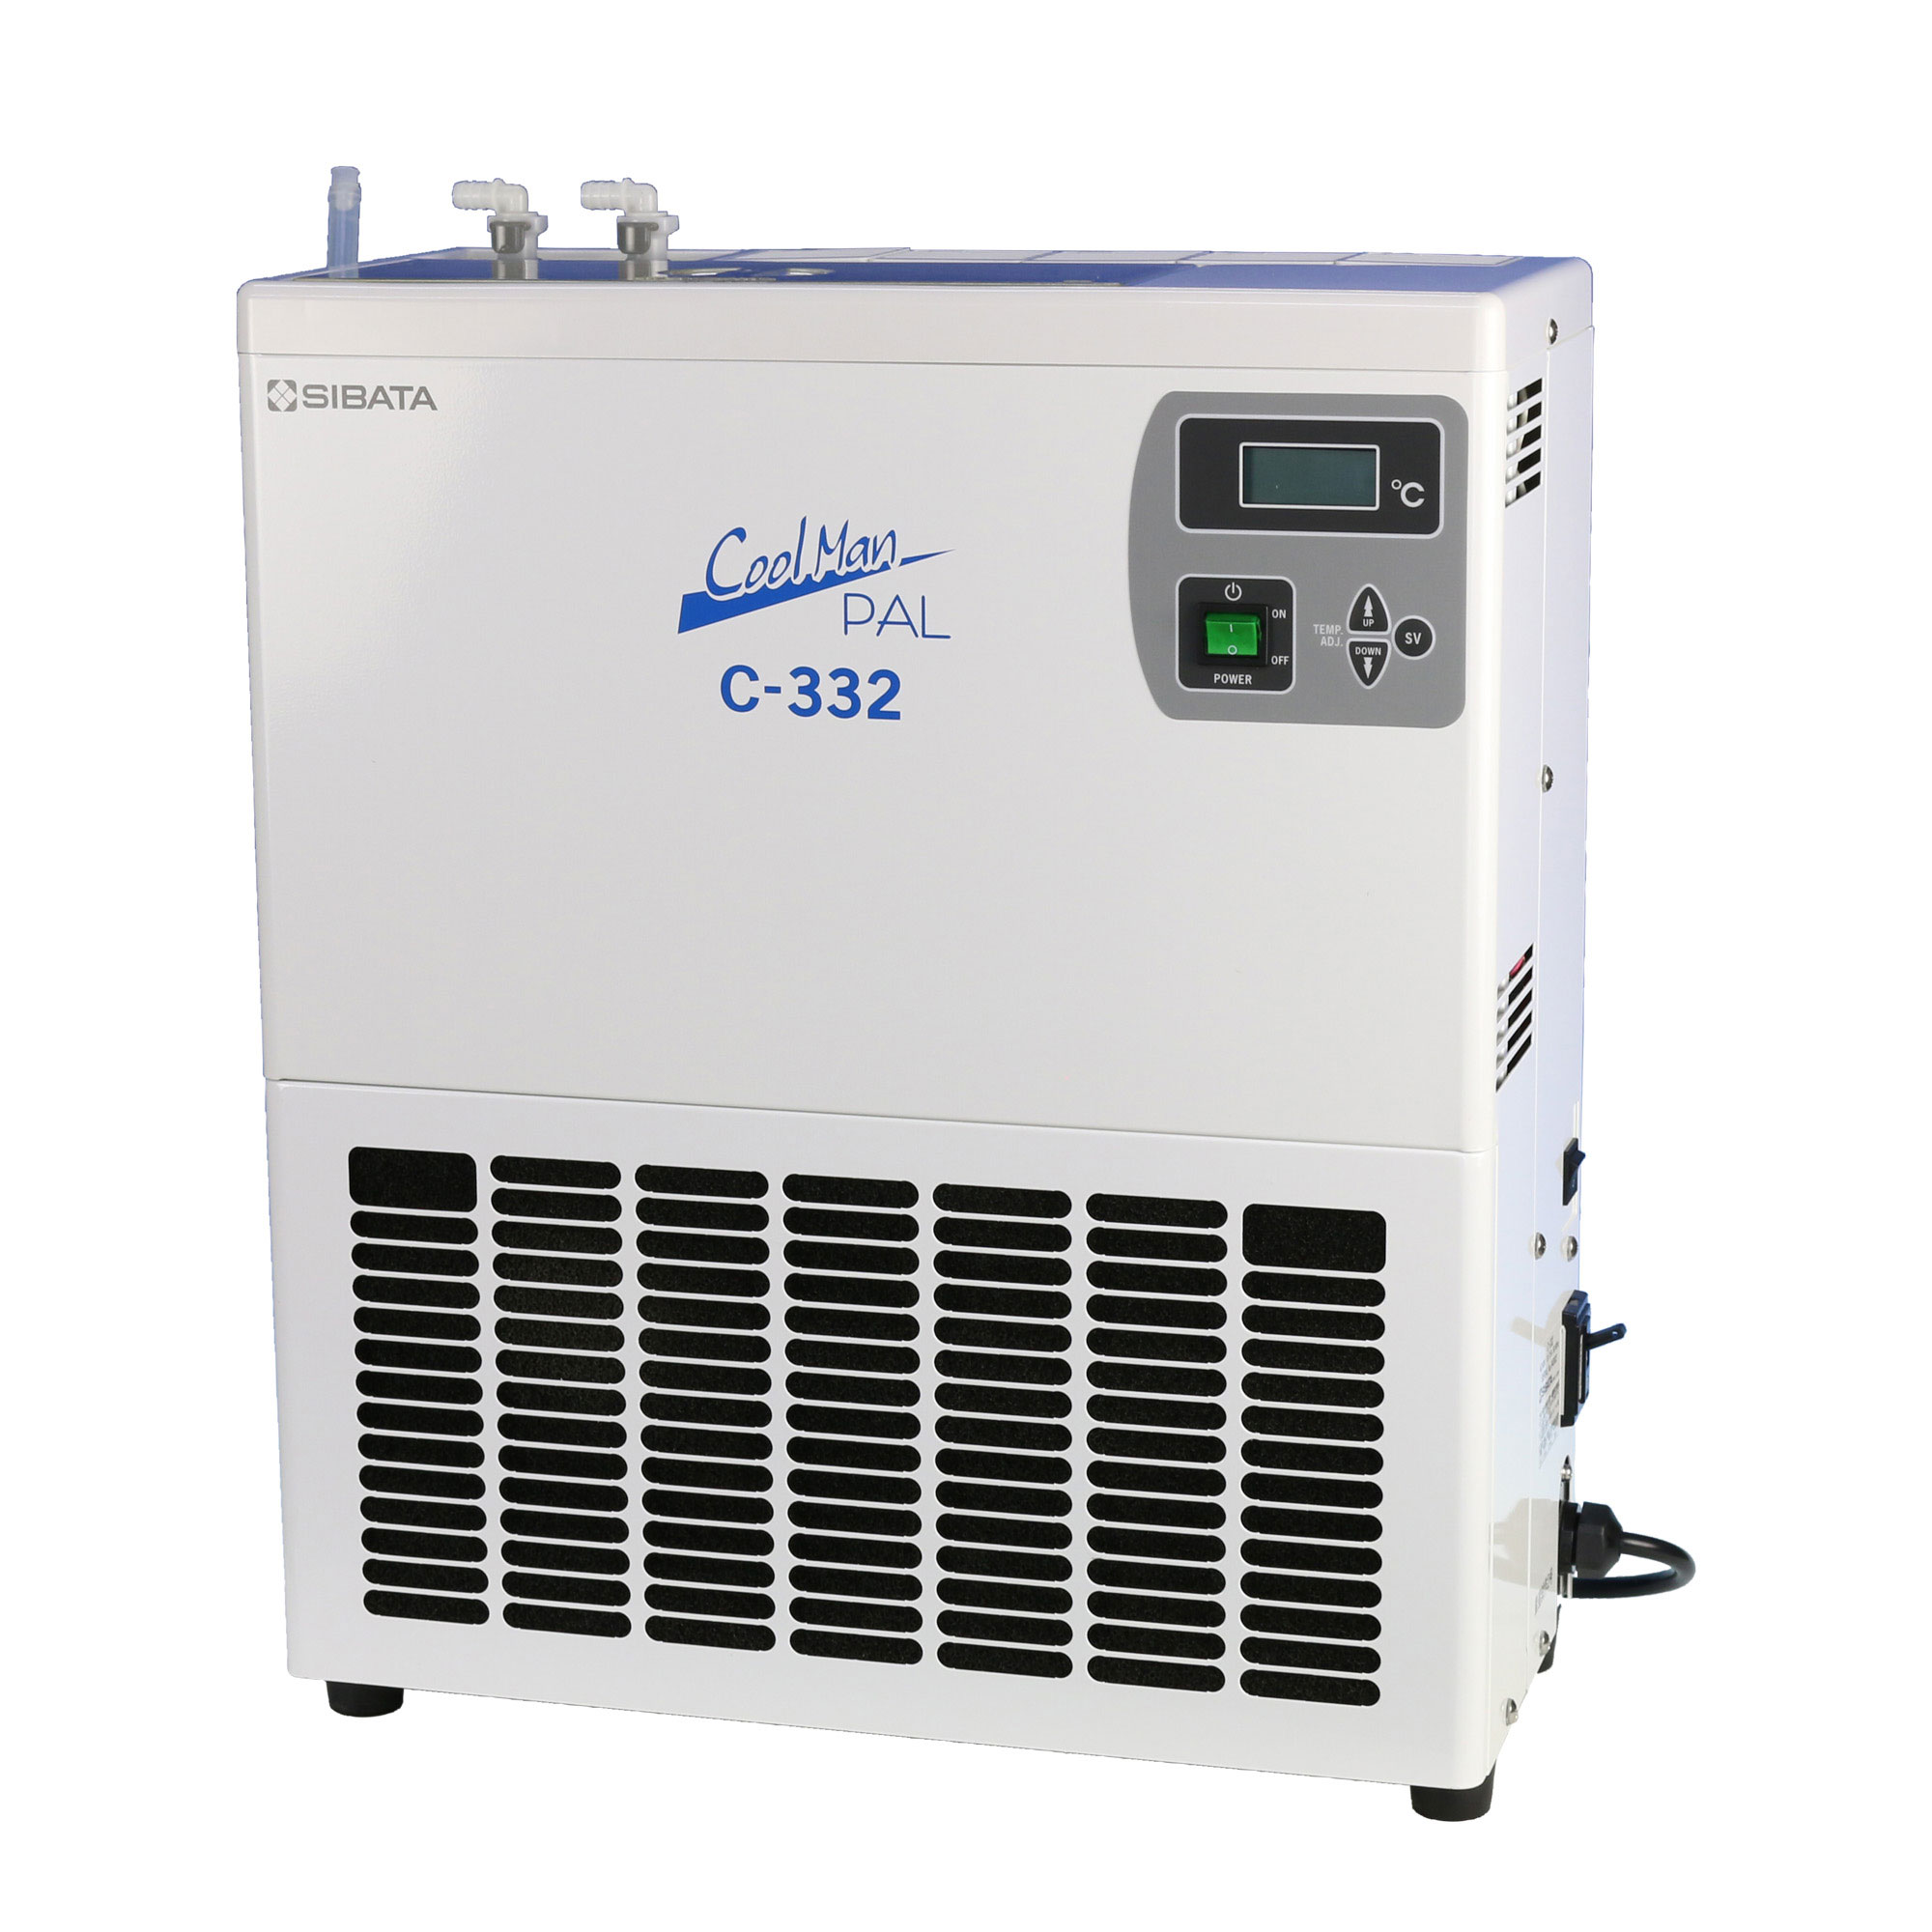 柴田科学C-332型低温循环水箱Cool Manpal